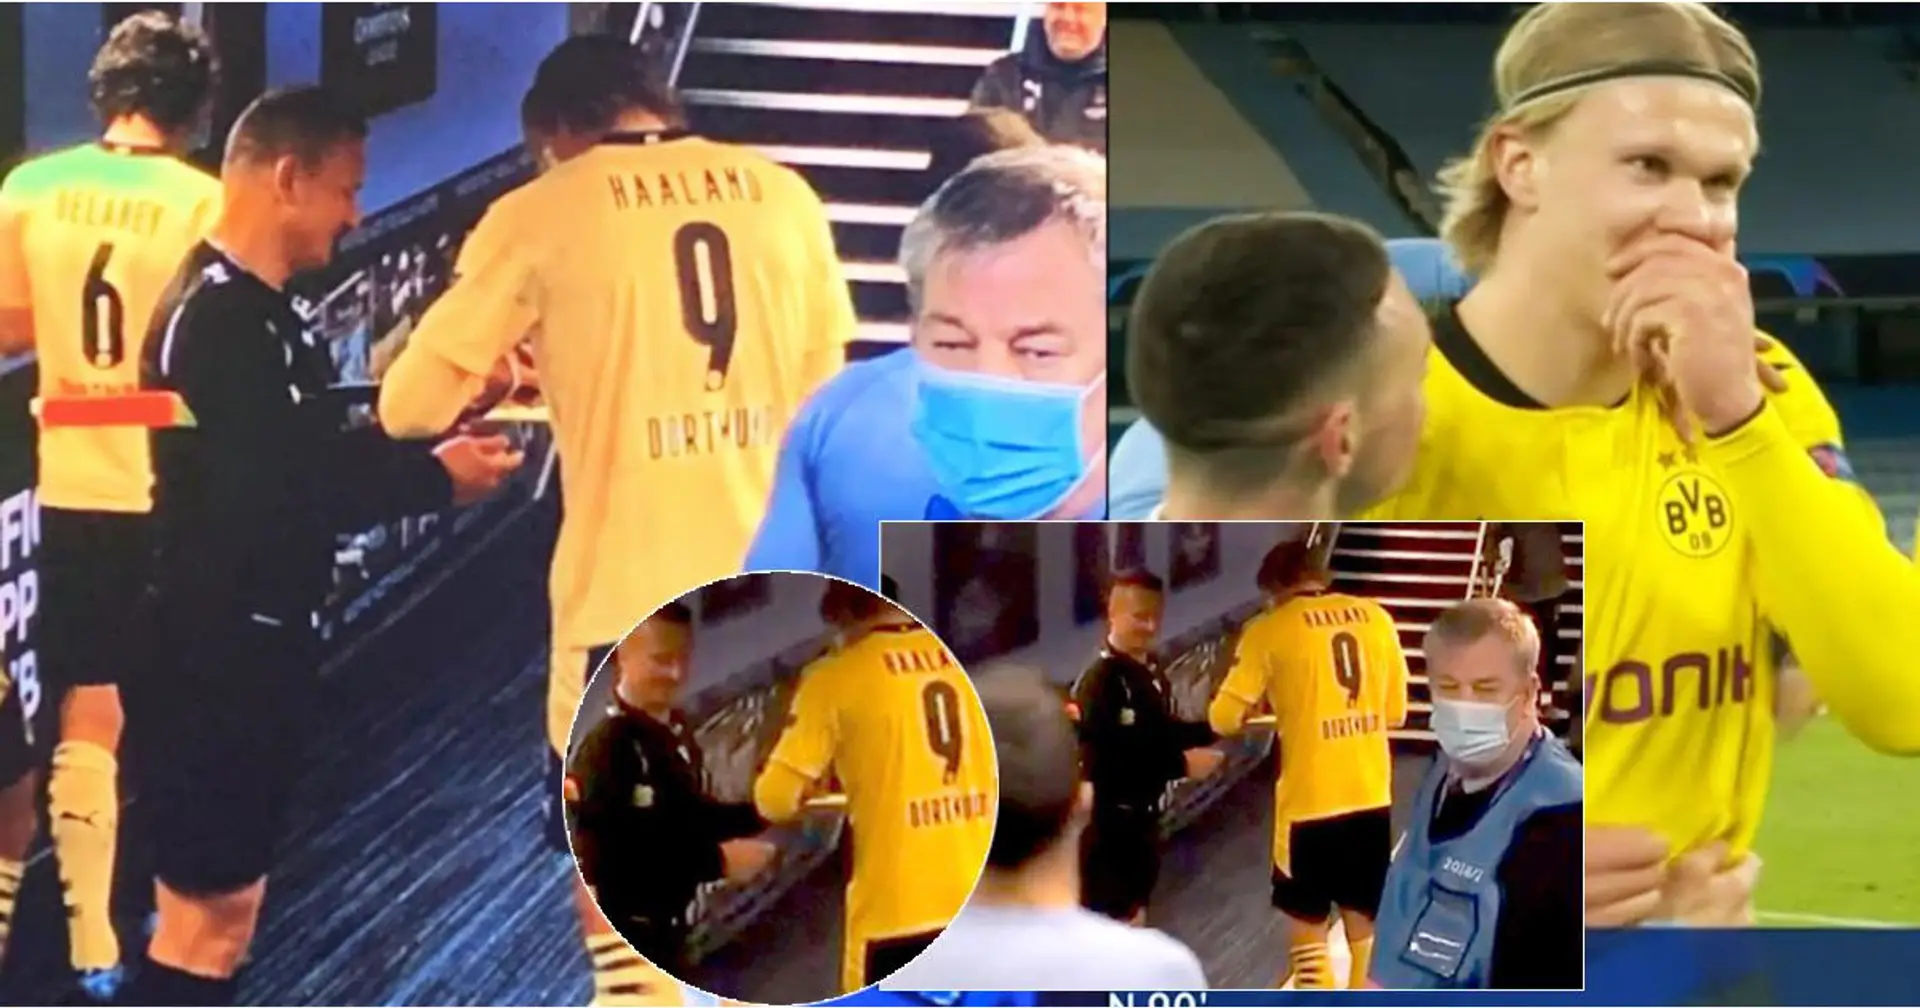 Guardalinee ripreso dalle telecamere mentre chiede un autografo ad Erling Haaland dopo la partita di Champions League